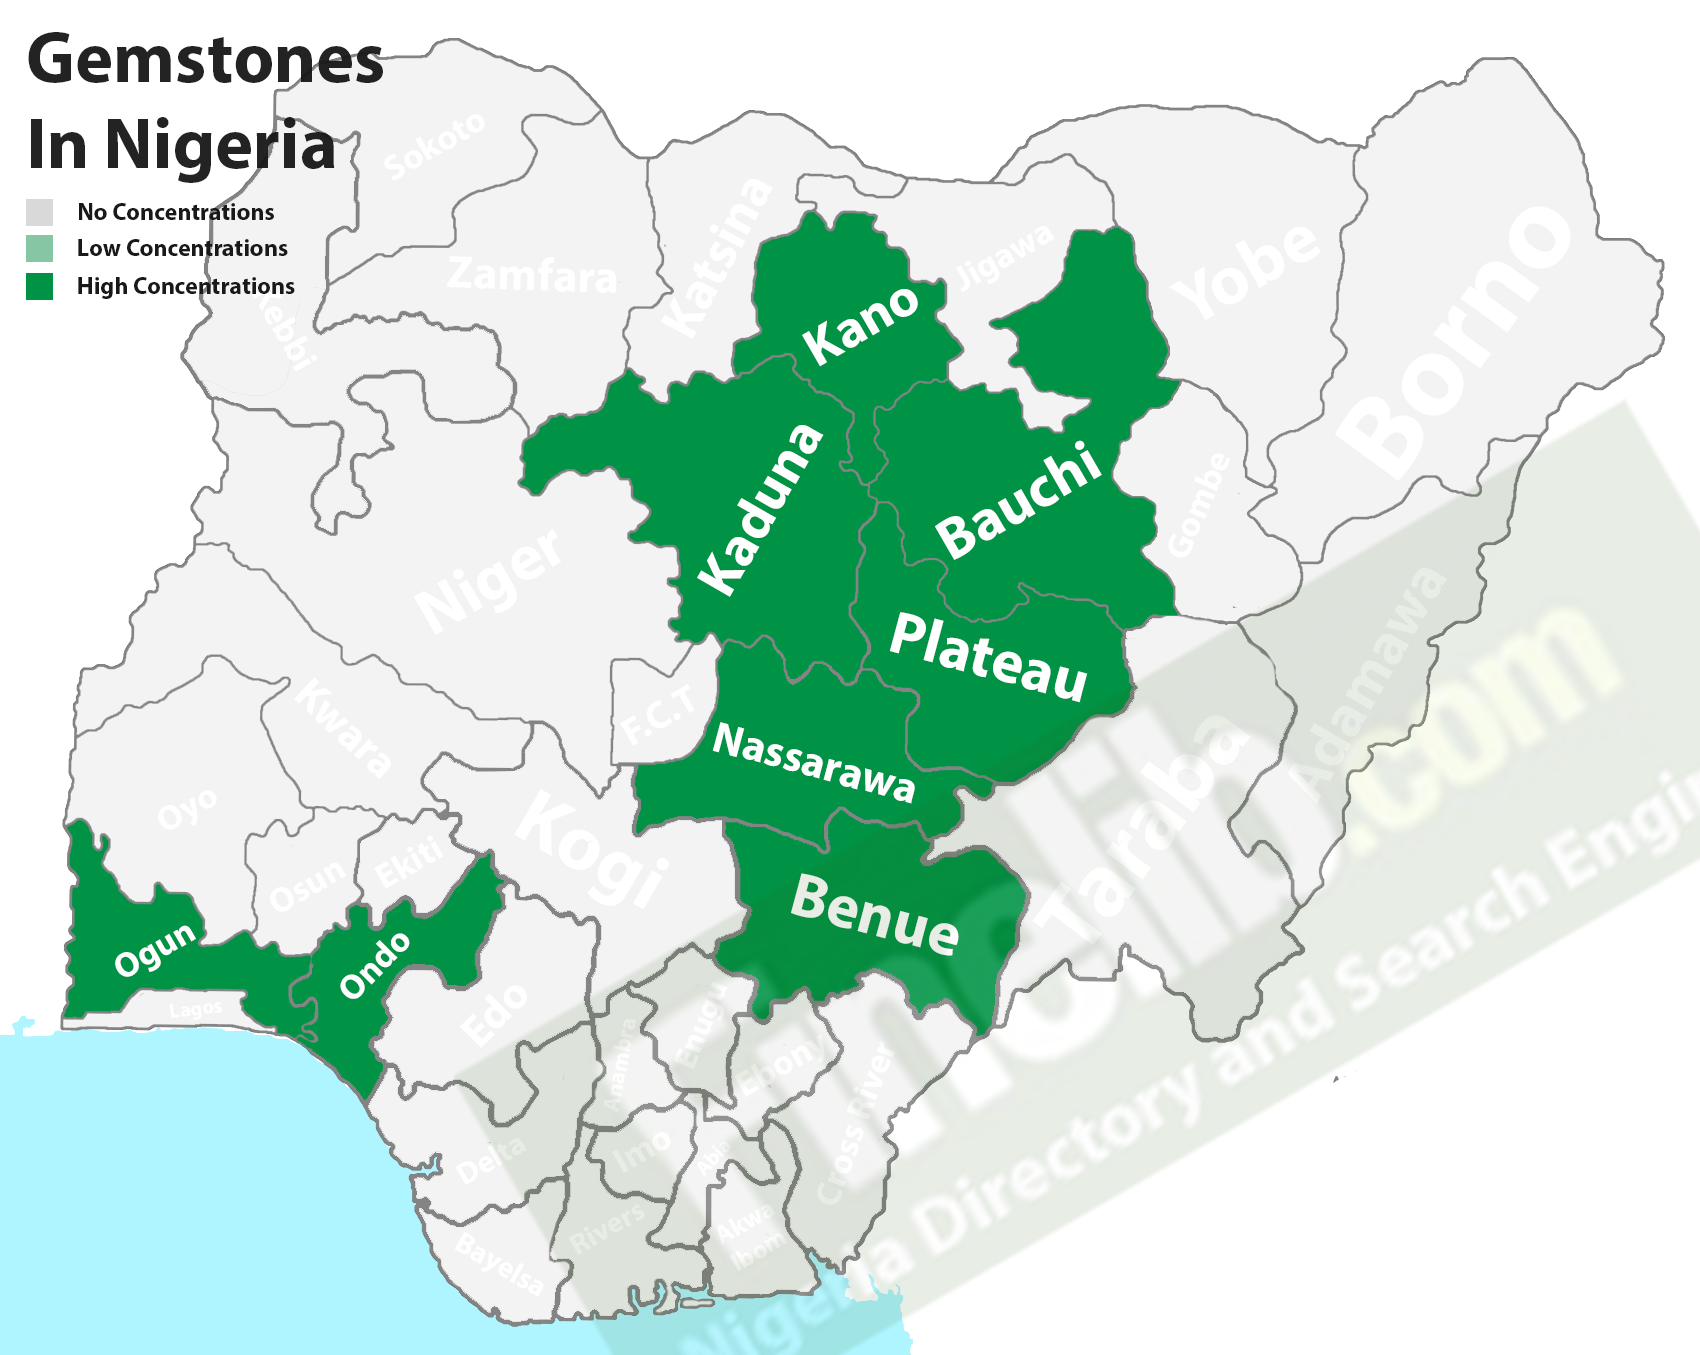 Gemstones deposits in Nigeria